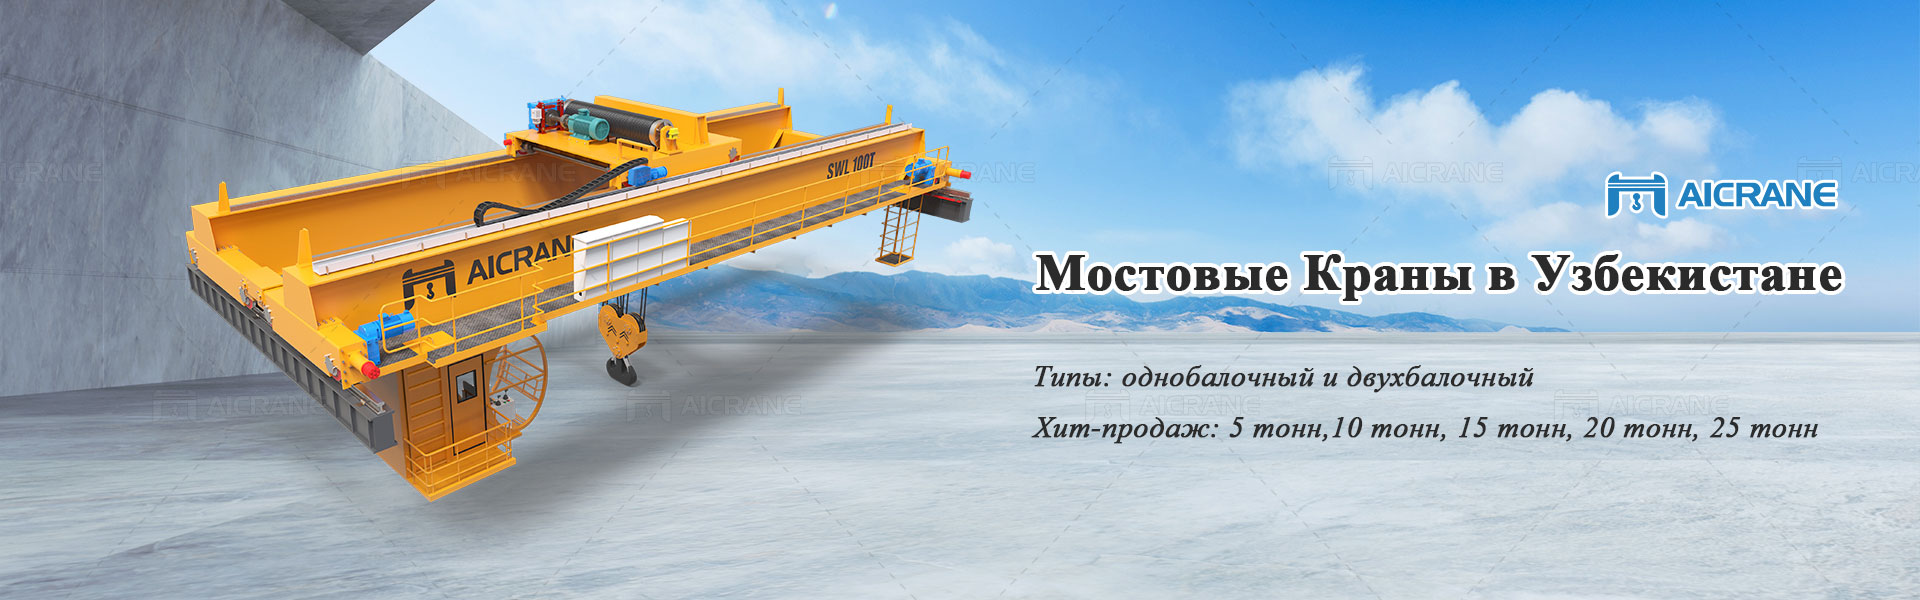 Мостовые-краны-в-Узбекистане-banner